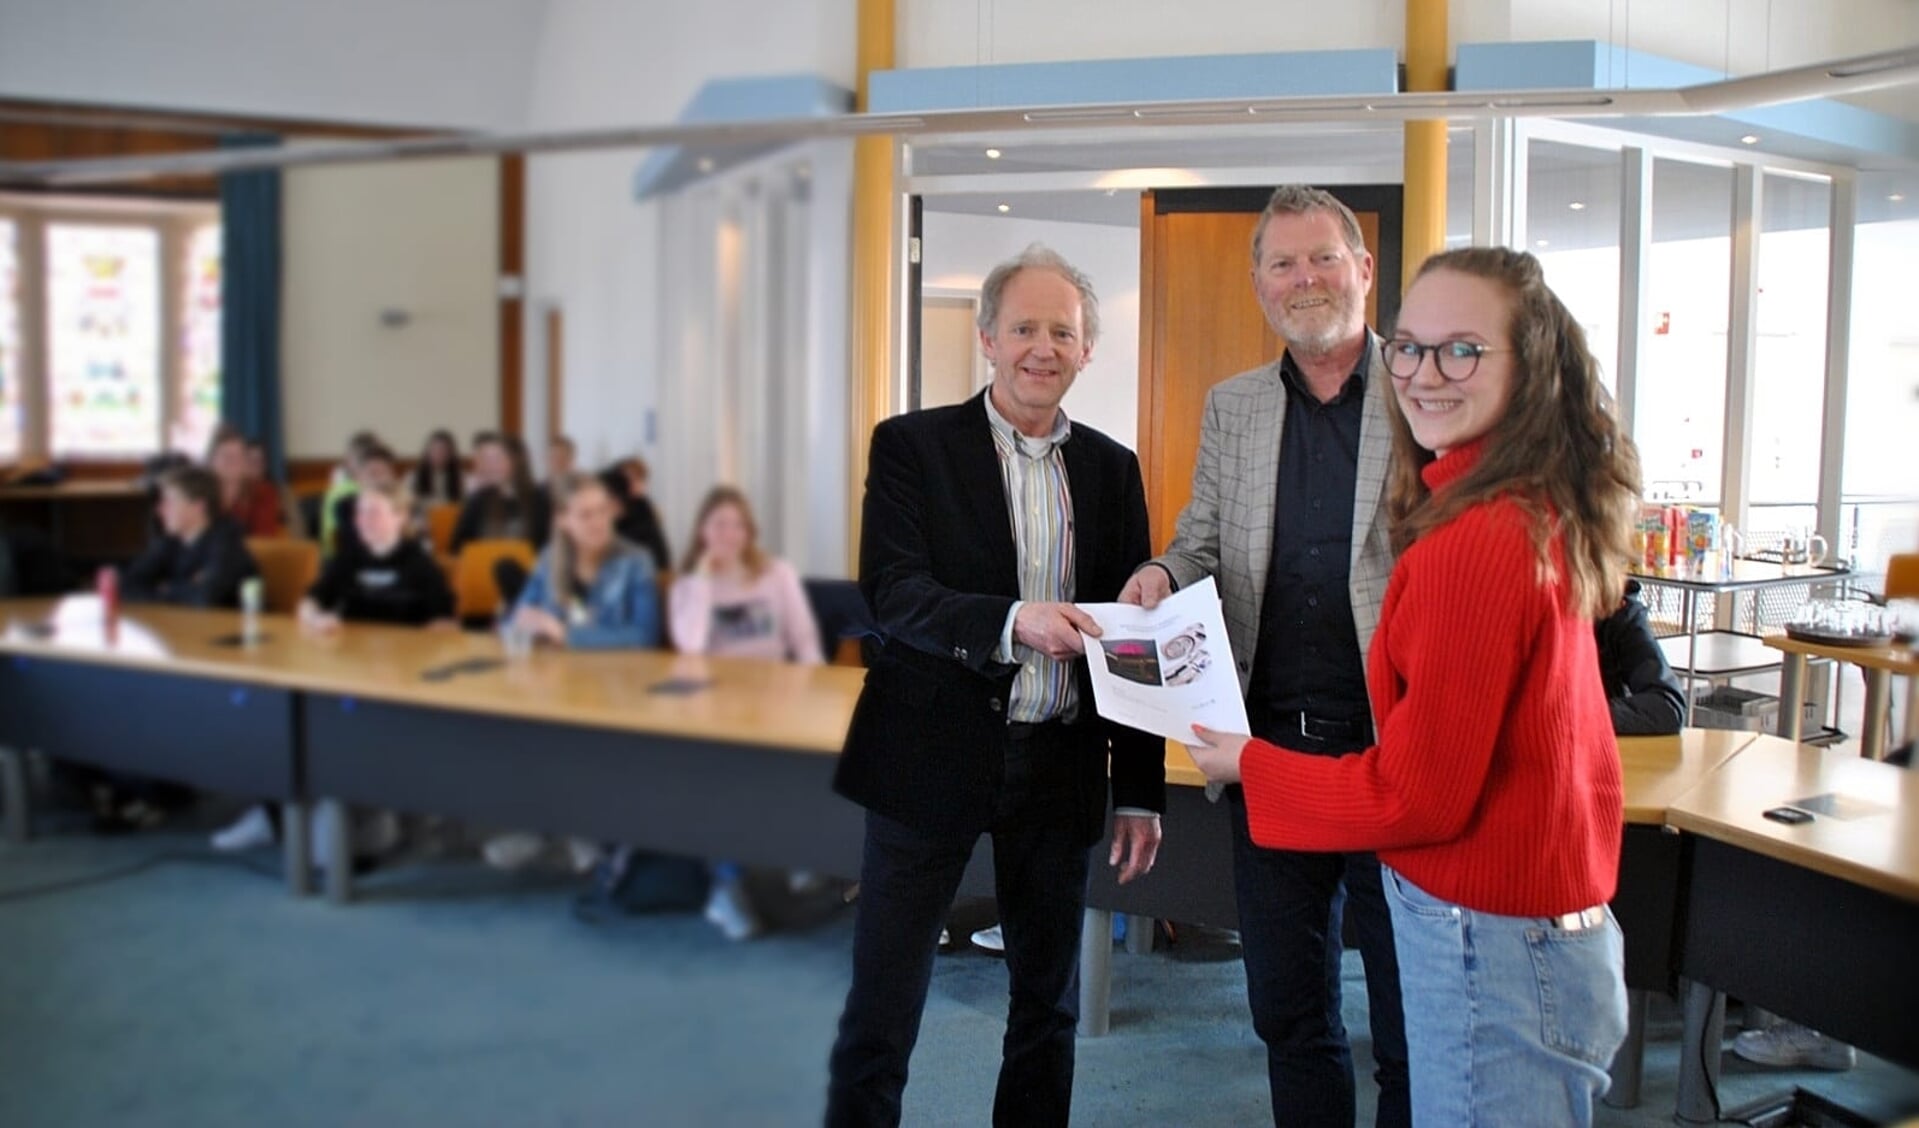 Op de foto vanaf links: Wethouders Jelle Brouwer (Uitgeest) en Peter van Diepen (Heiloo) overhandigen leerling Esther Min de opdracht om een mobiele werkplaats voor het basisonderwijs te ontwerpen.